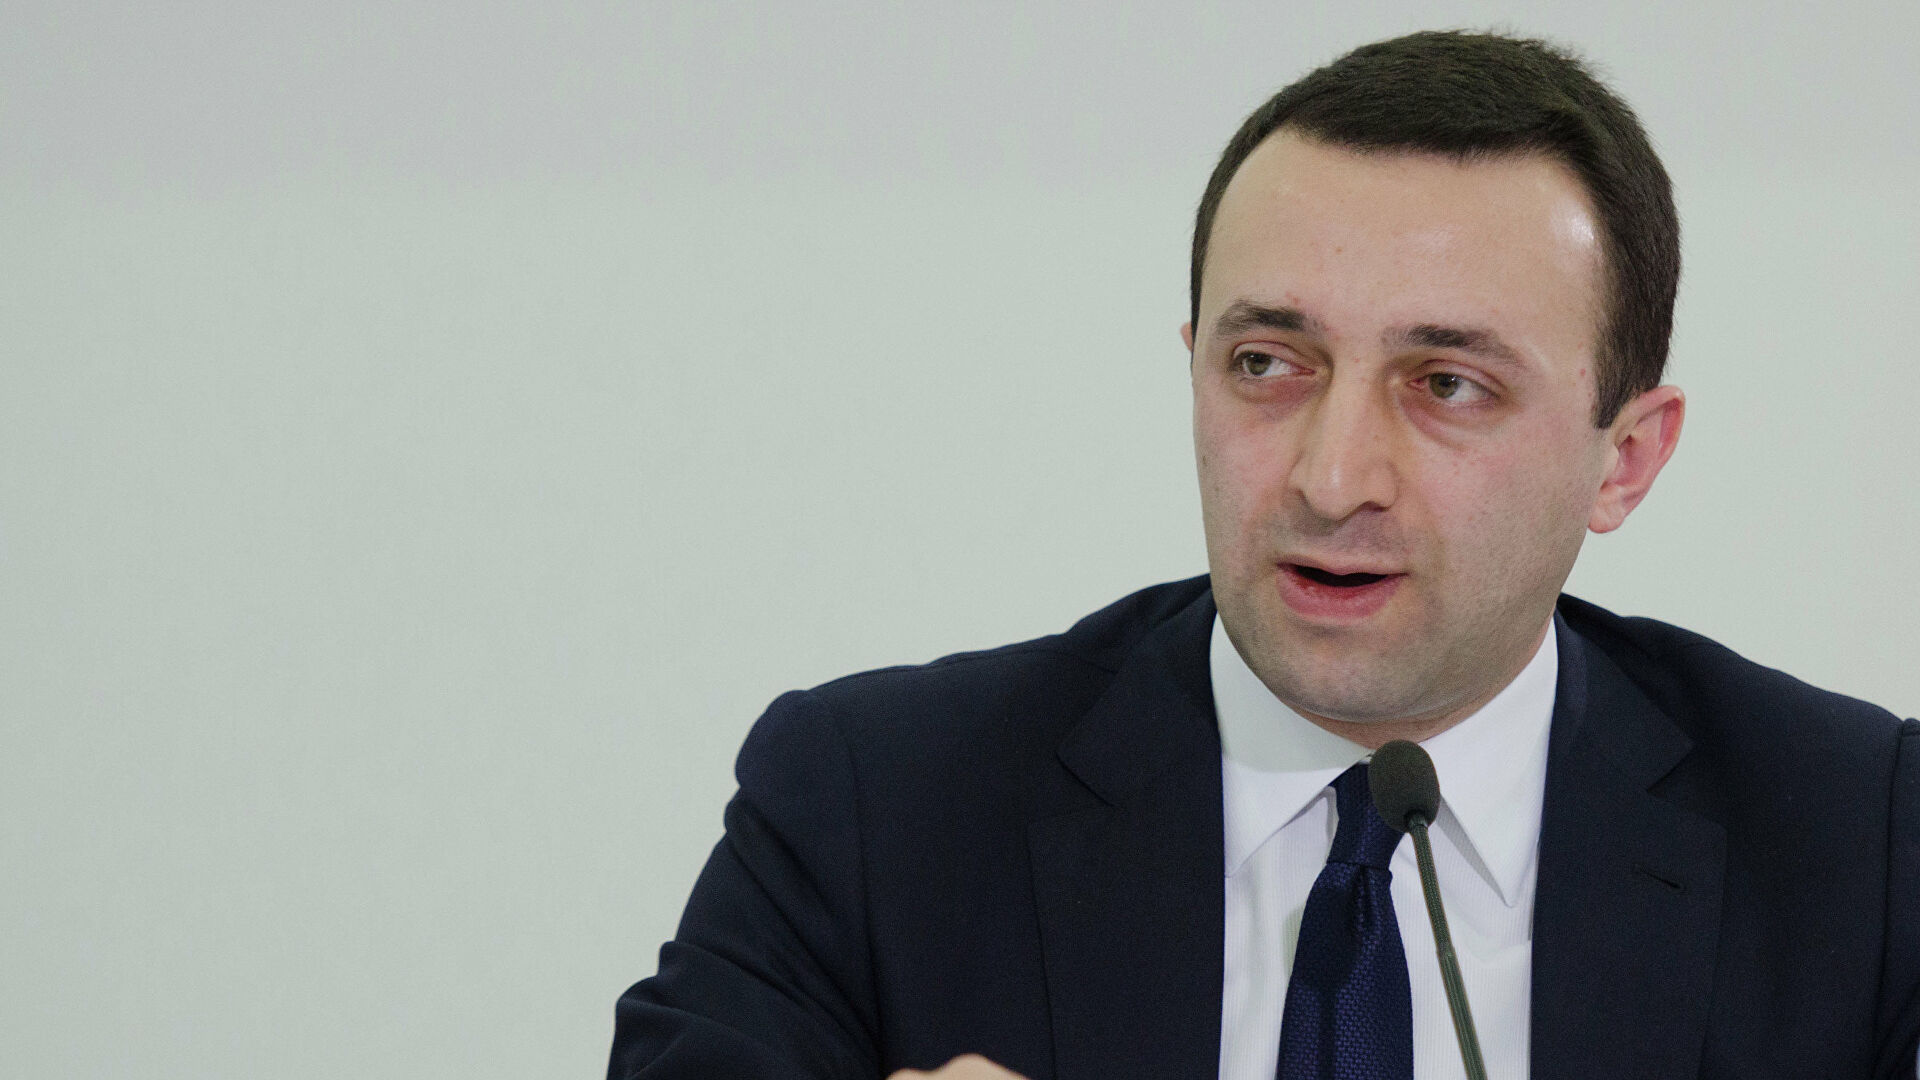 Кандидат в премьеры Грузии Гарибашвили назвал Саакашвили позором нации и армии 